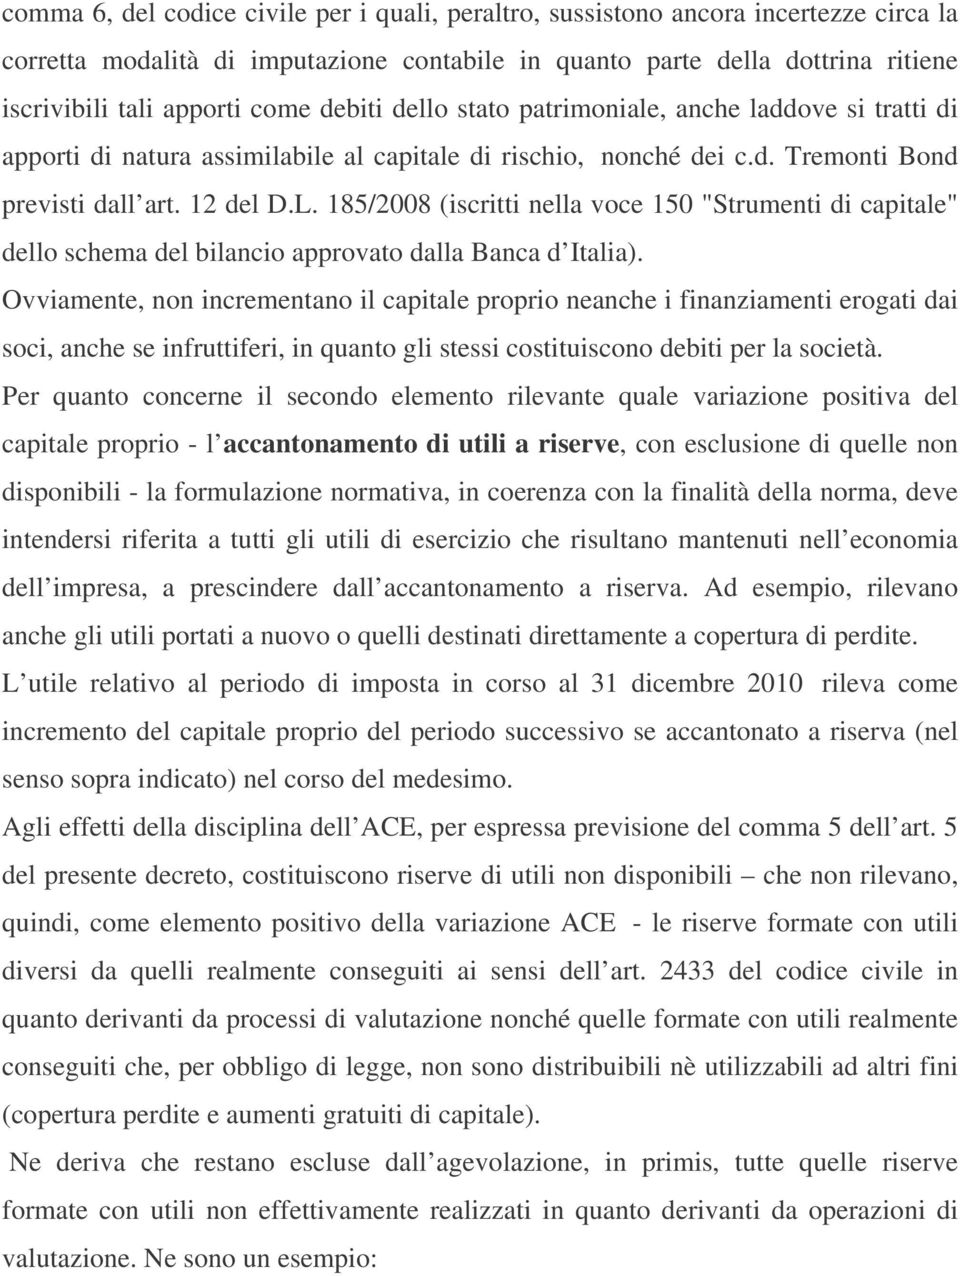 185/2008 (iscritti nella voce 150 "Strumenti di capitale" dello schema del bilancio approvato dalla Banca d Italia).